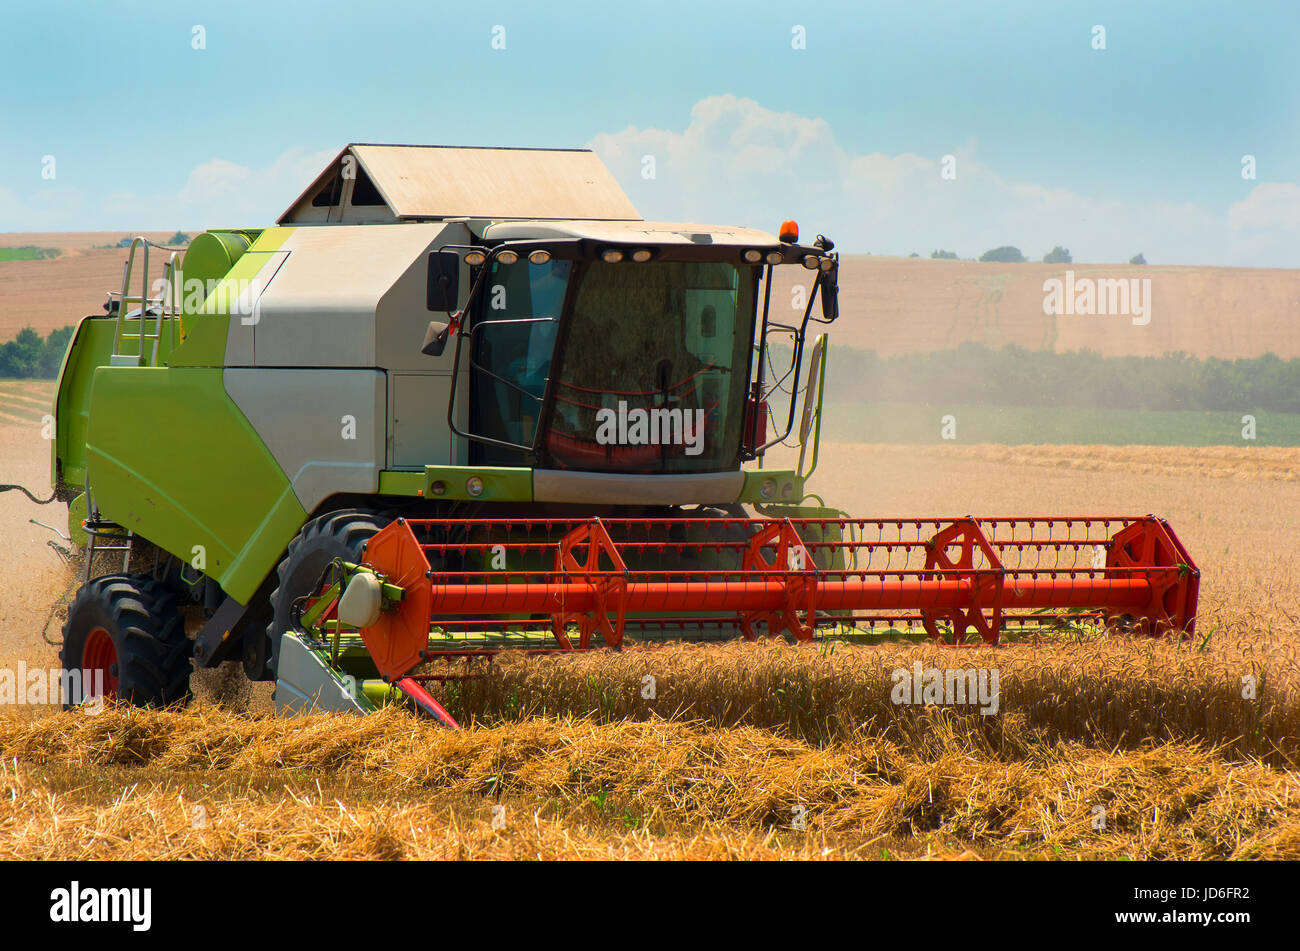 La récolte de céréales avec une moissonneuse-batteuse. Champ de blé. Banque D'Images